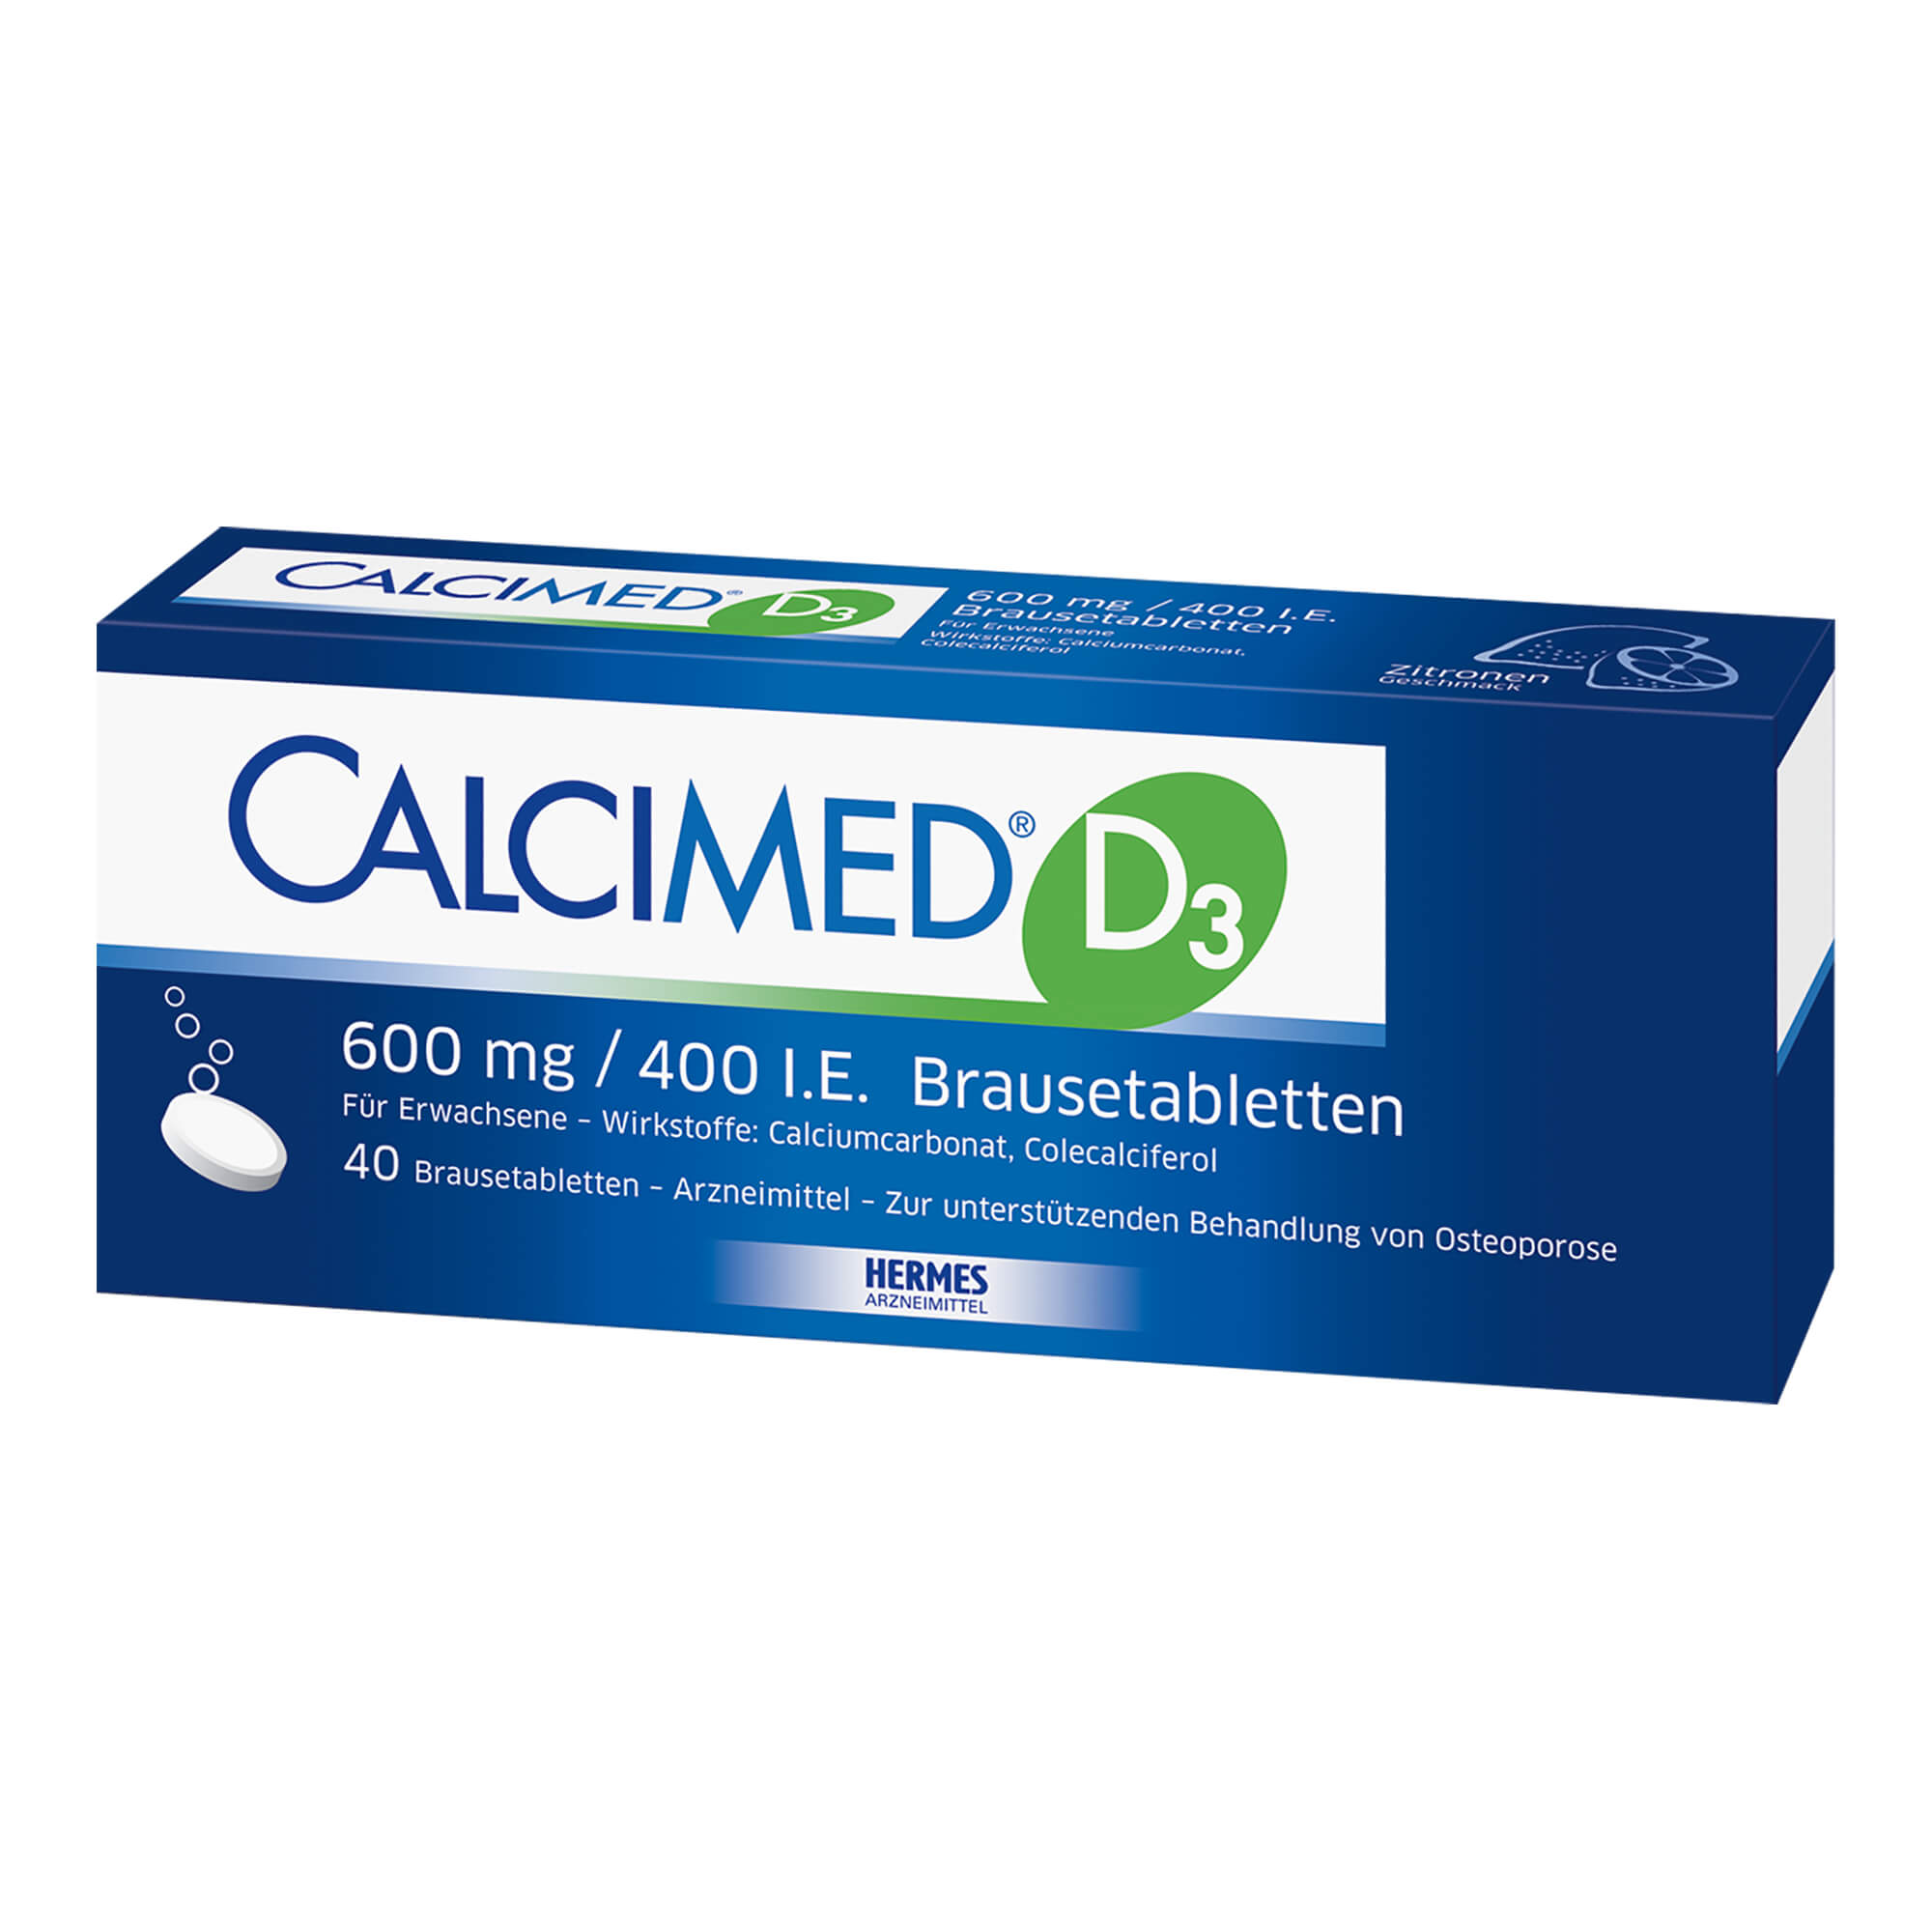 Bei nachgewiesenem Calcium- und Vitamin D3-Mangel sowie zur unterstützenden Behandlung von Osteoporose. Mit Zitronengeschmack.